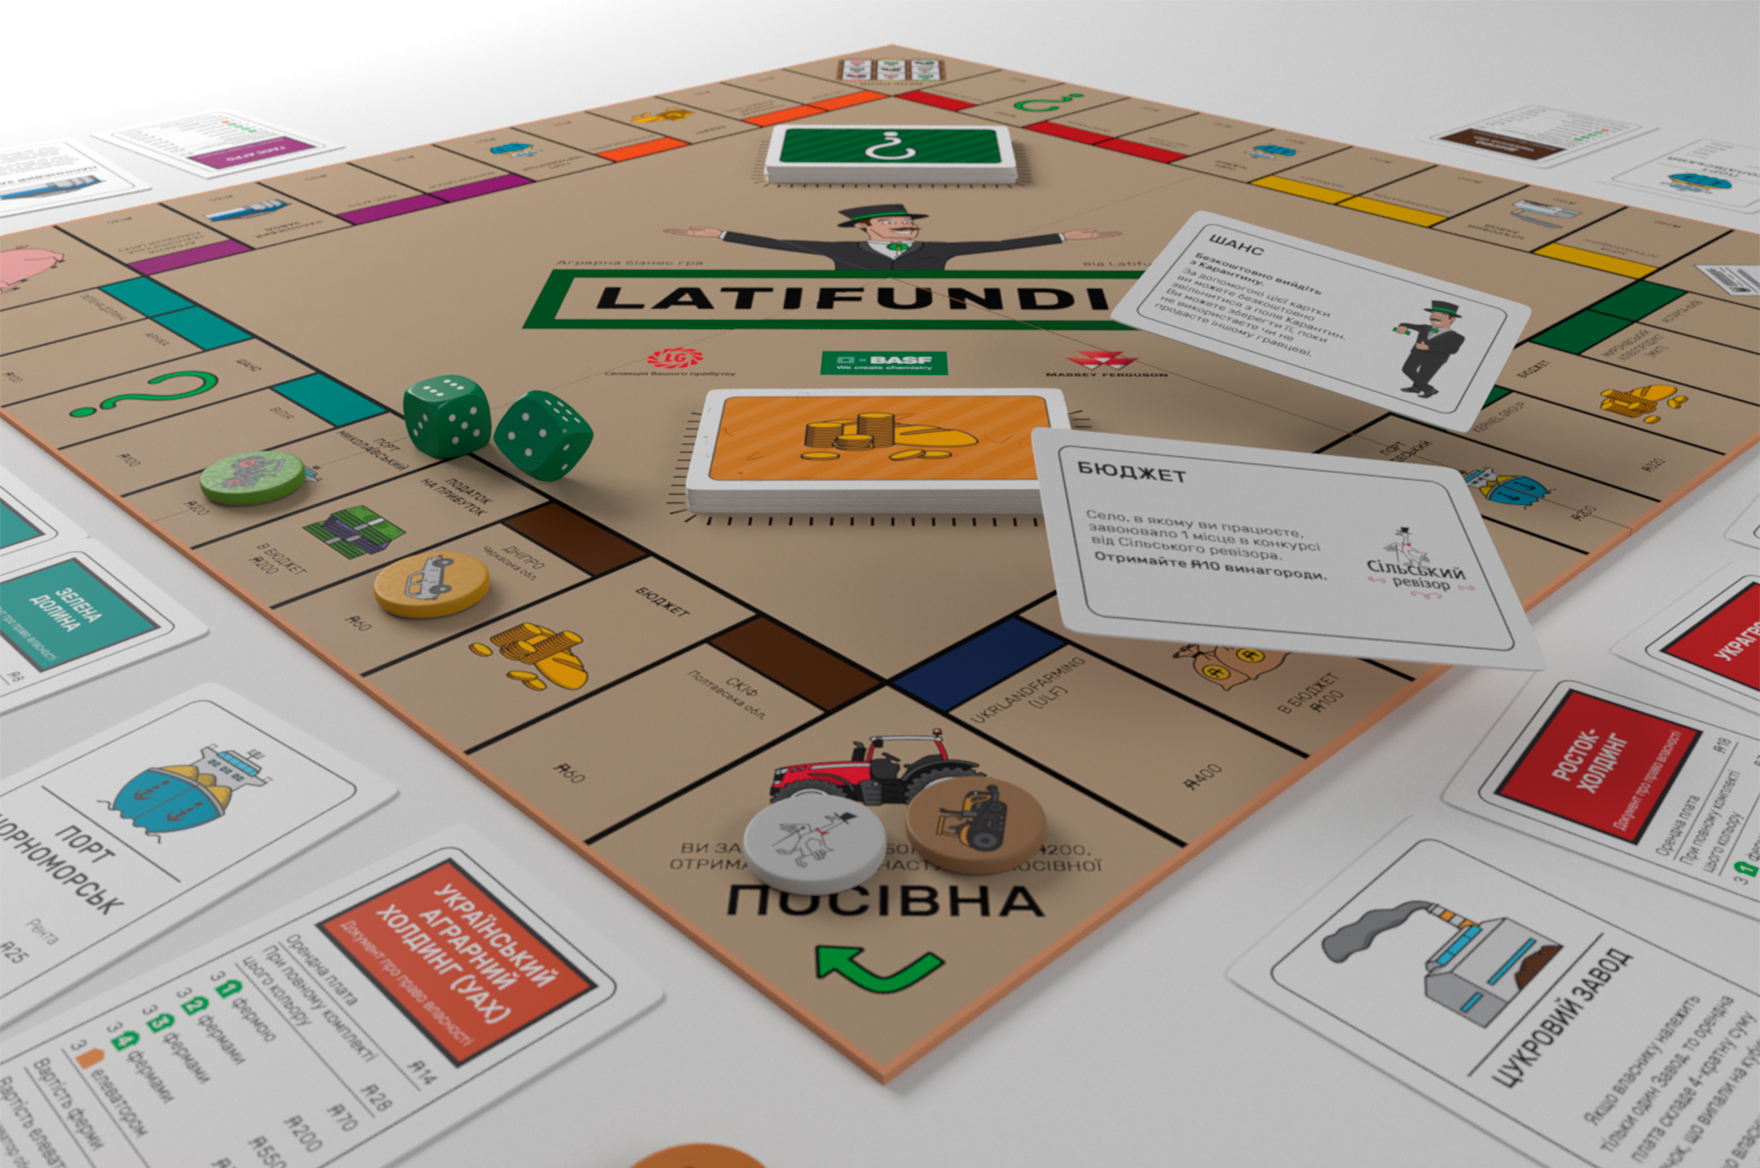 Дизайн настільної гри монополії Latifudiia для компанії Latifundist.com